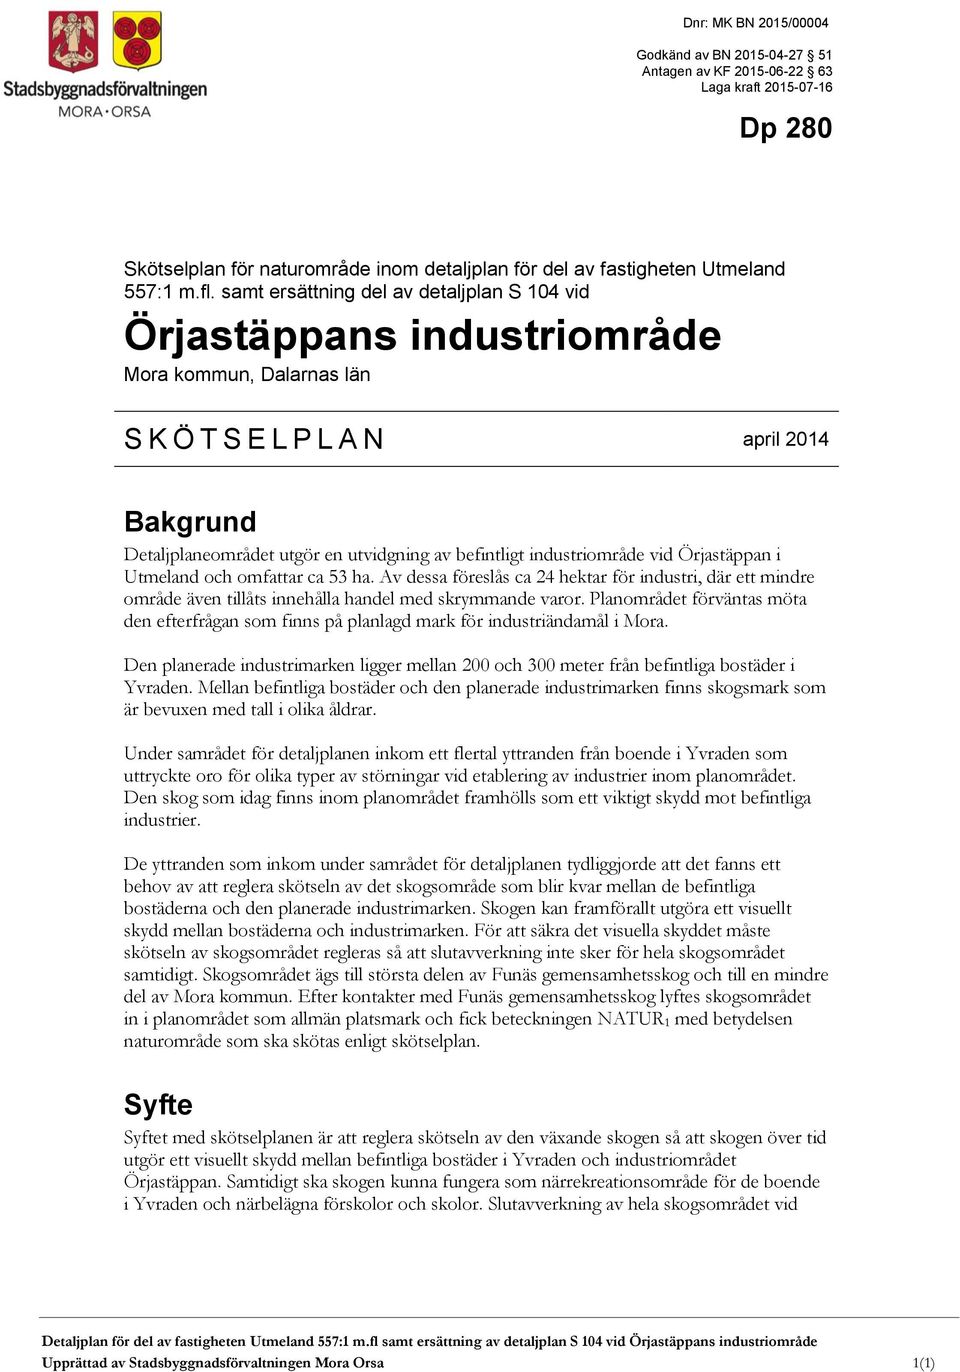 industriområde vid Örjastäppan i Utmeland och omfattar ca 53 ha. Av dessa föreslås ca 24 hektar för industri, där ett mindre område även tillåts innehålla handel med skrymmande varor.